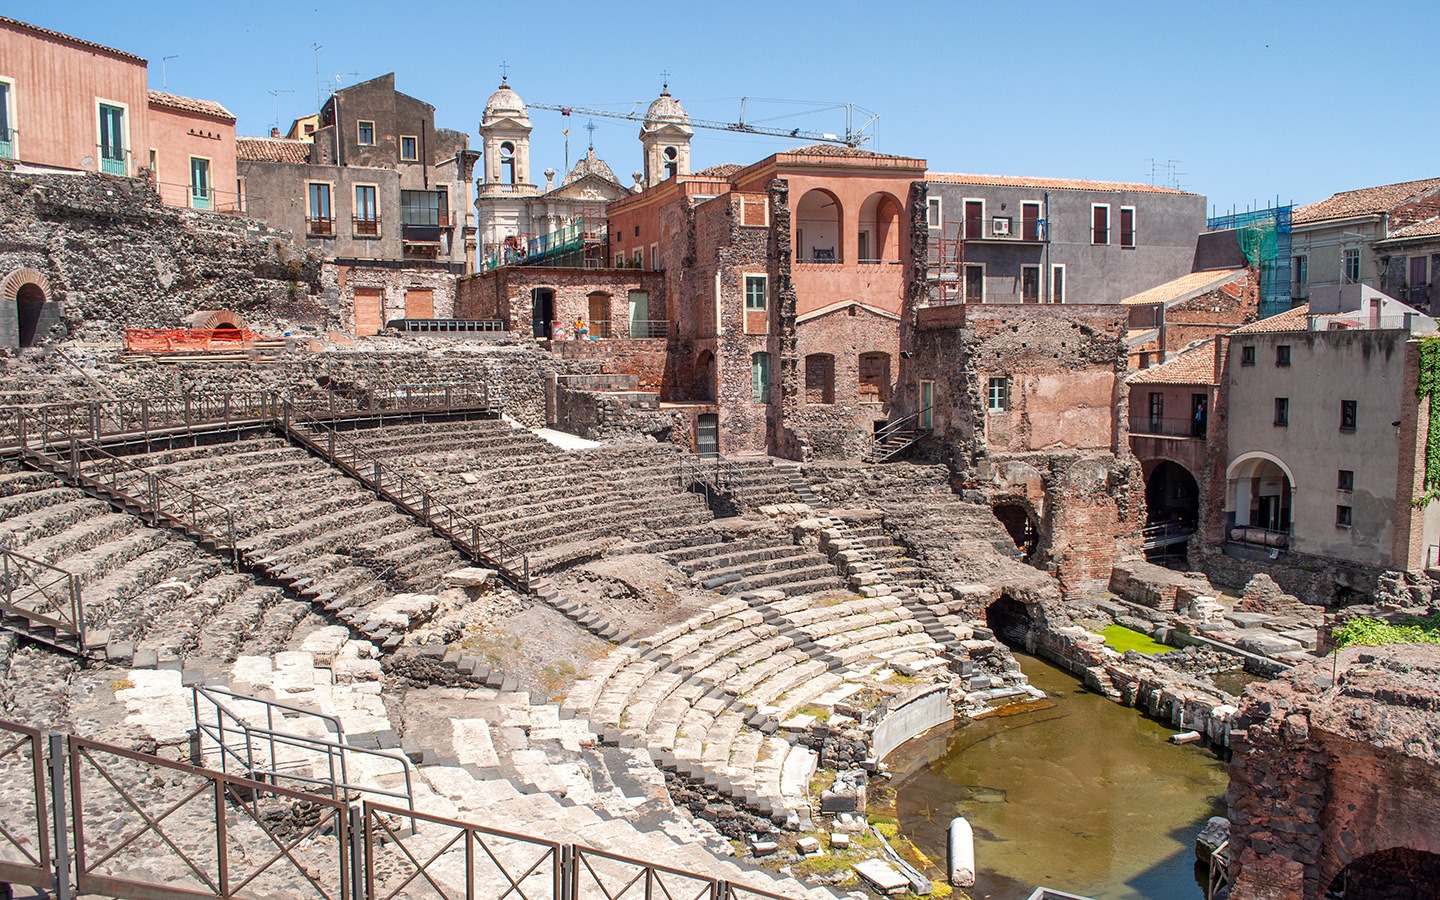 The Roman amphitheatre in Catania